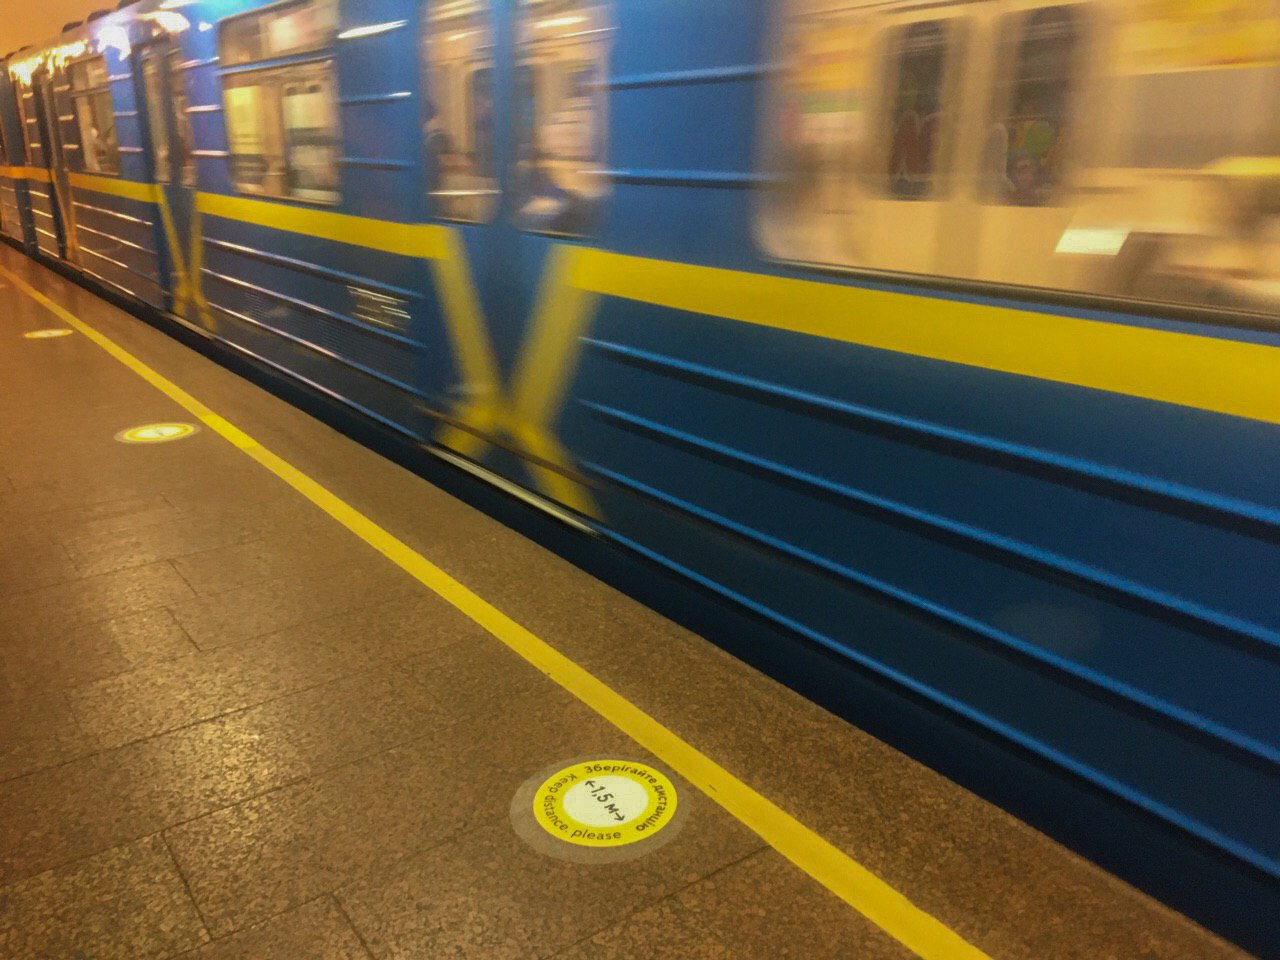 Через 5-7 лет начнут строить метро на Троещину — глава «Киевгенплана»